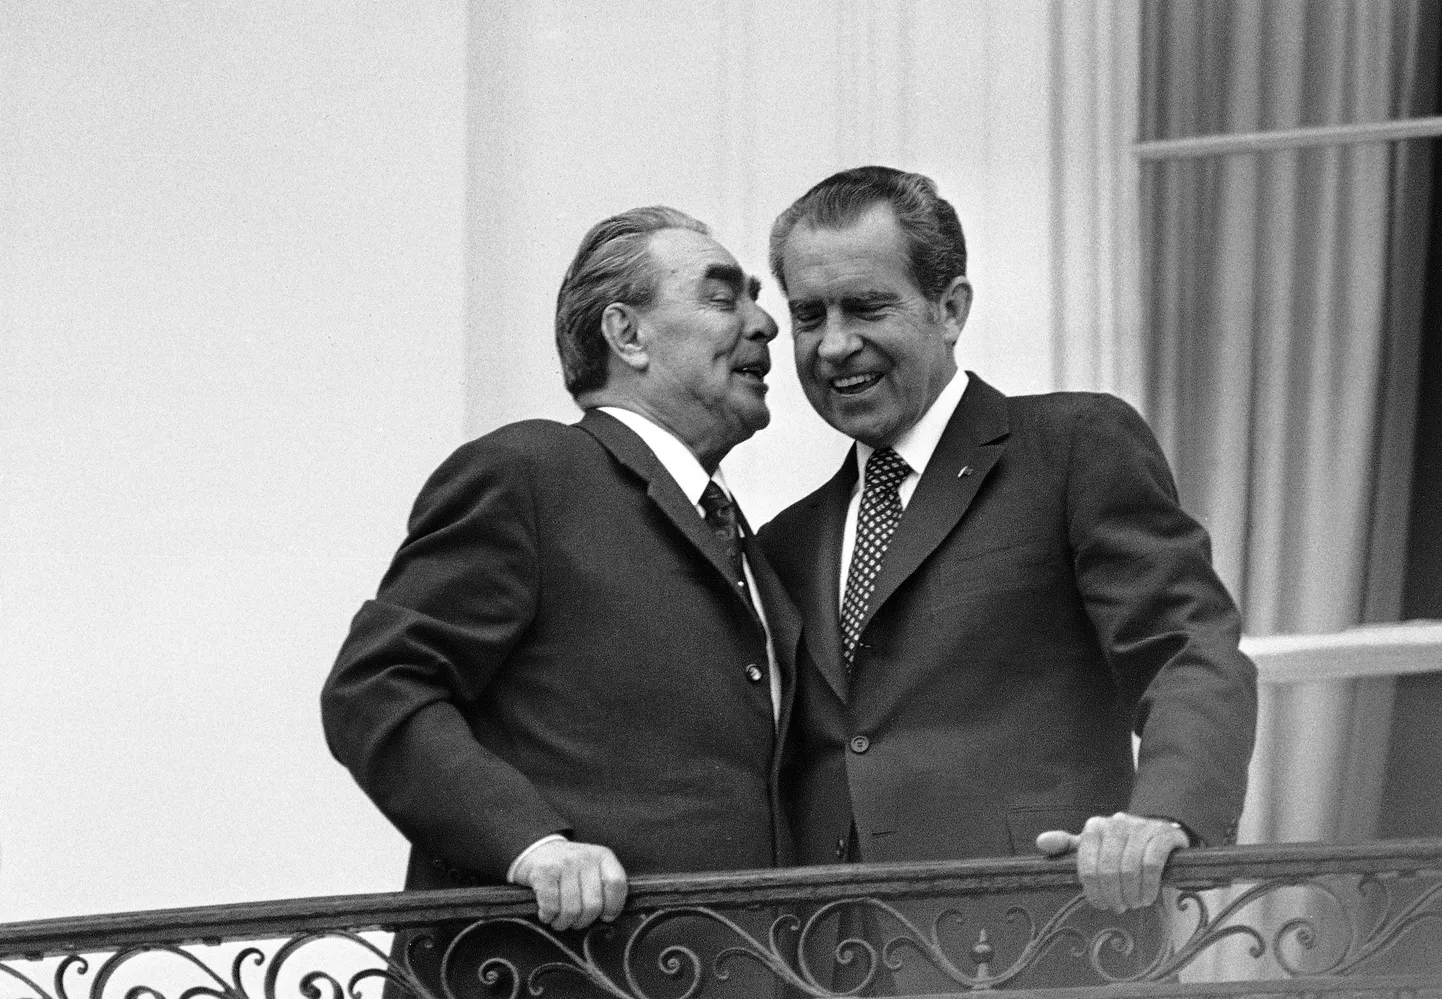 Доска Брежневу уже установлена. На архивном фото - Леонид Брежнев с президентом США Ричардом Никсоном 18 июня 1973 года на балконе в Белом доме в Вашингтоне.